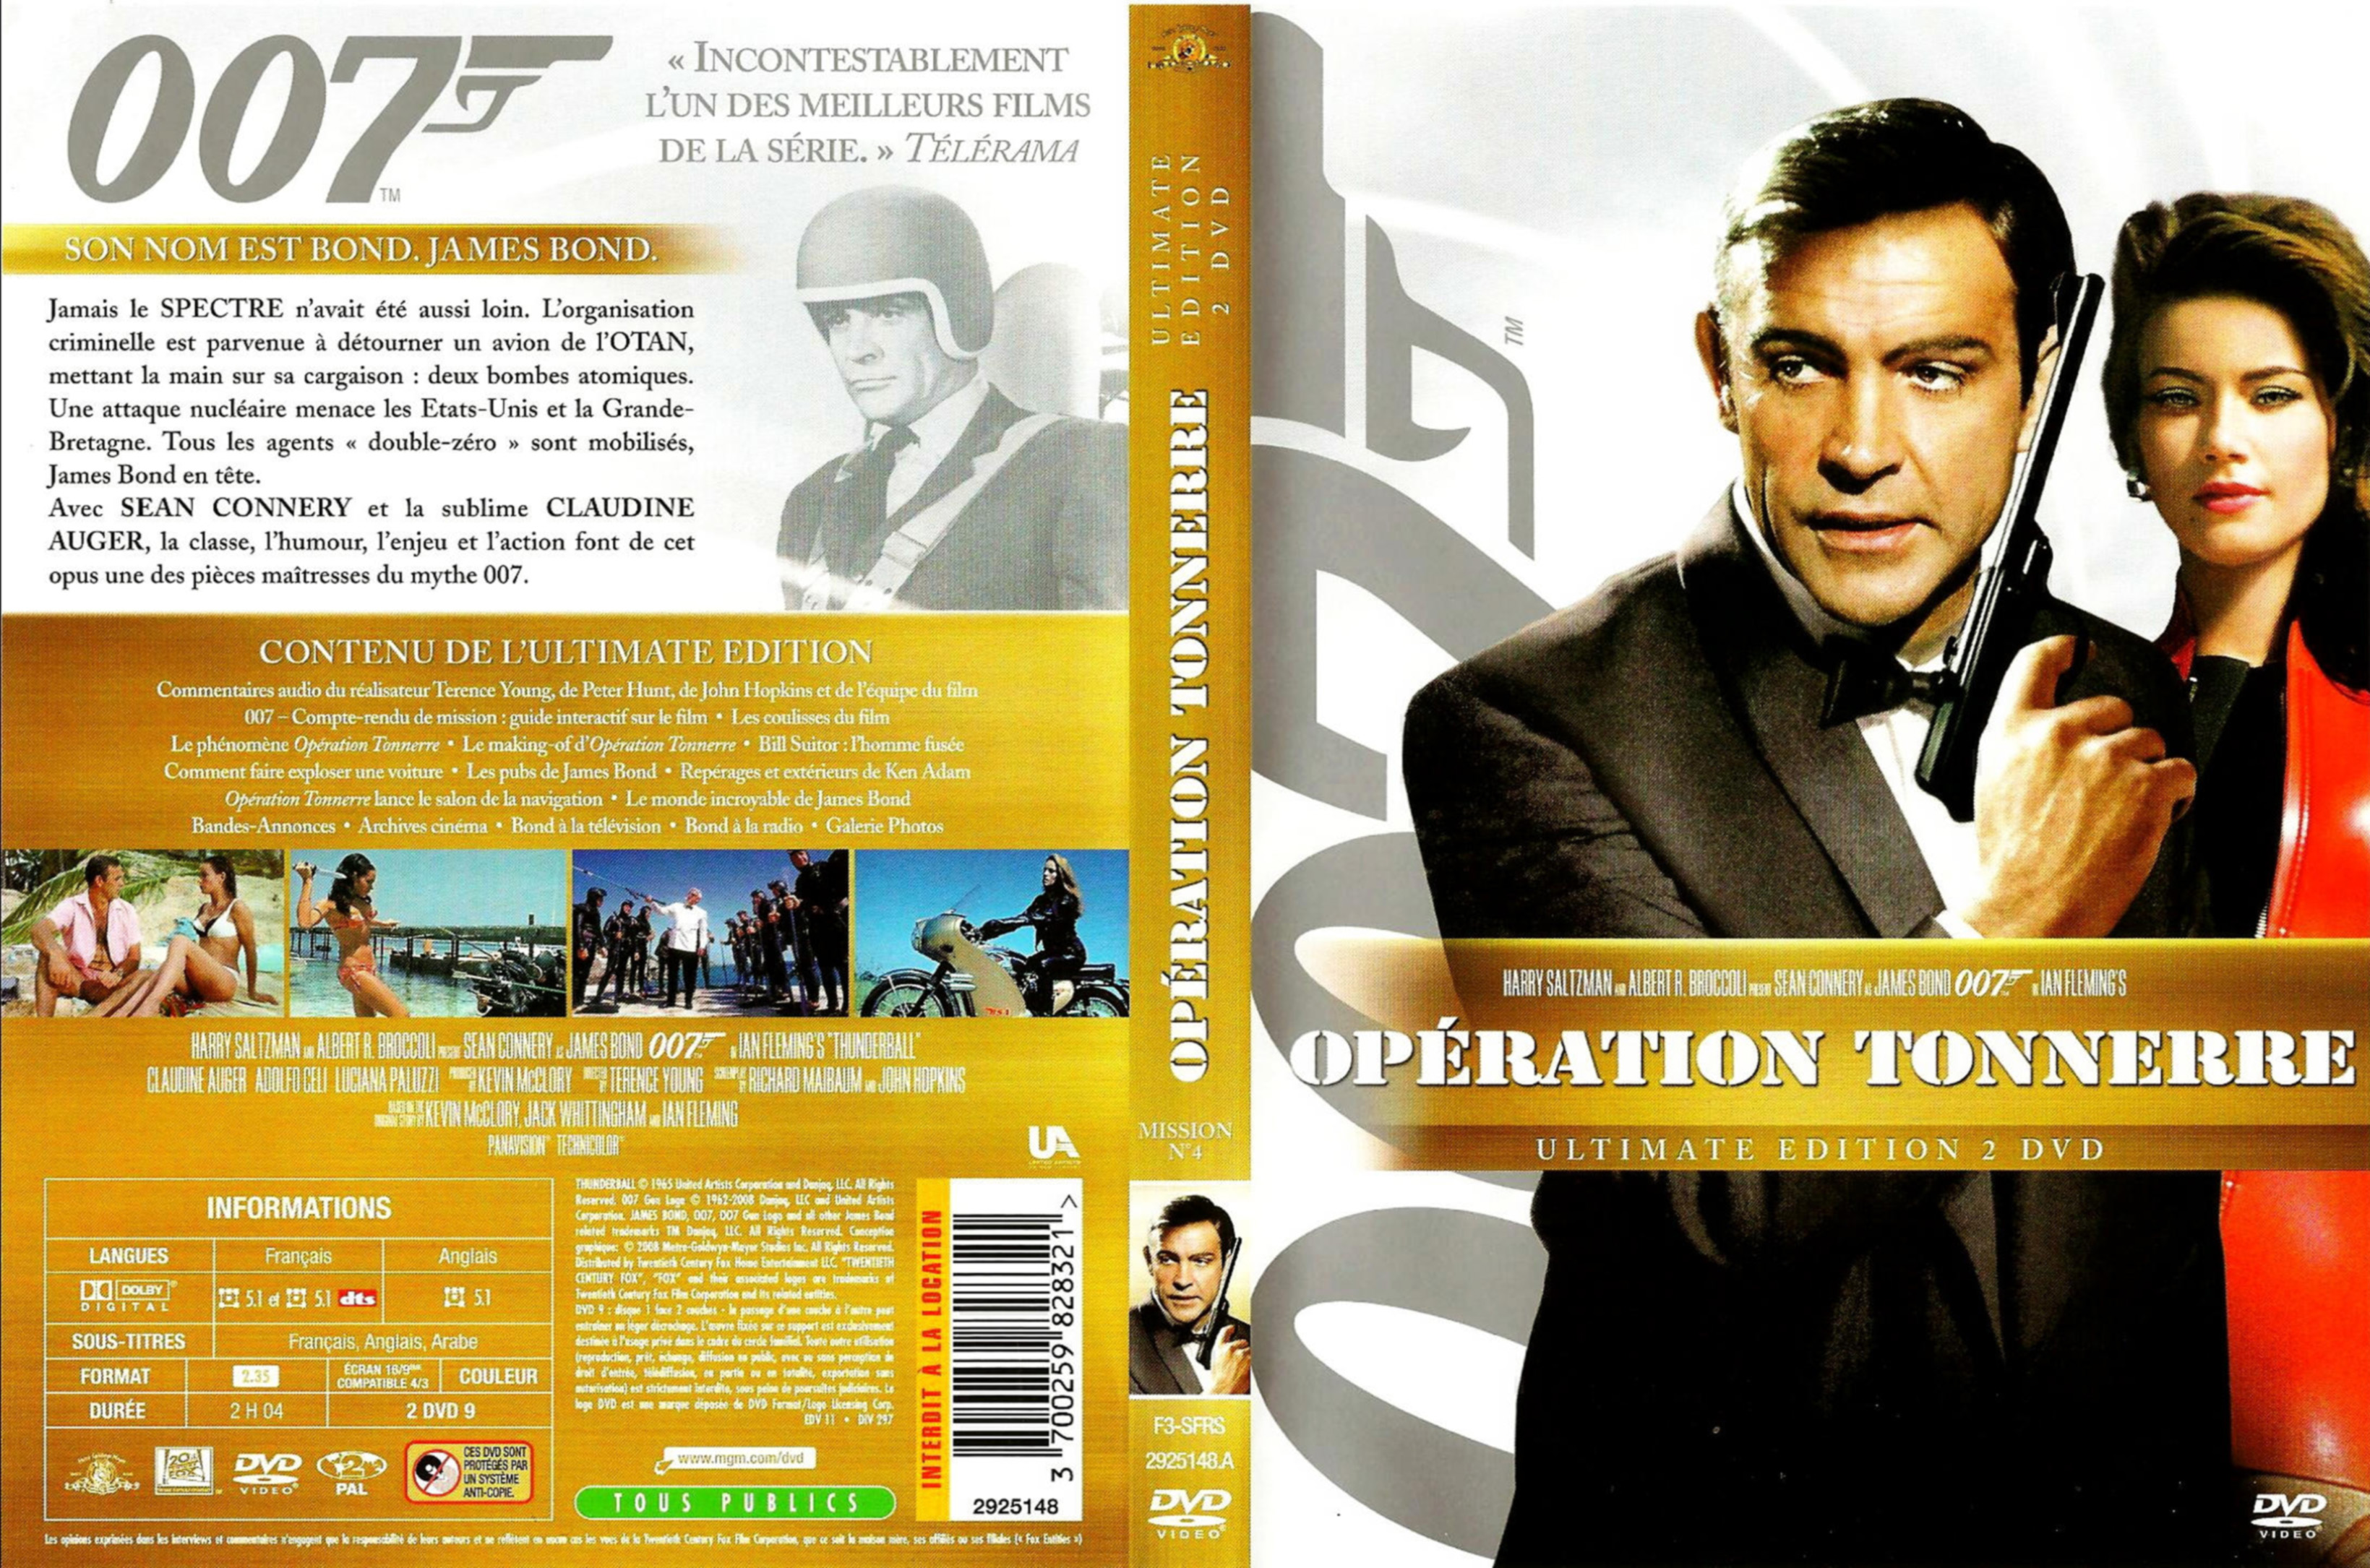 Jaquette DVD James Bond 007 Opration tonnerre v2